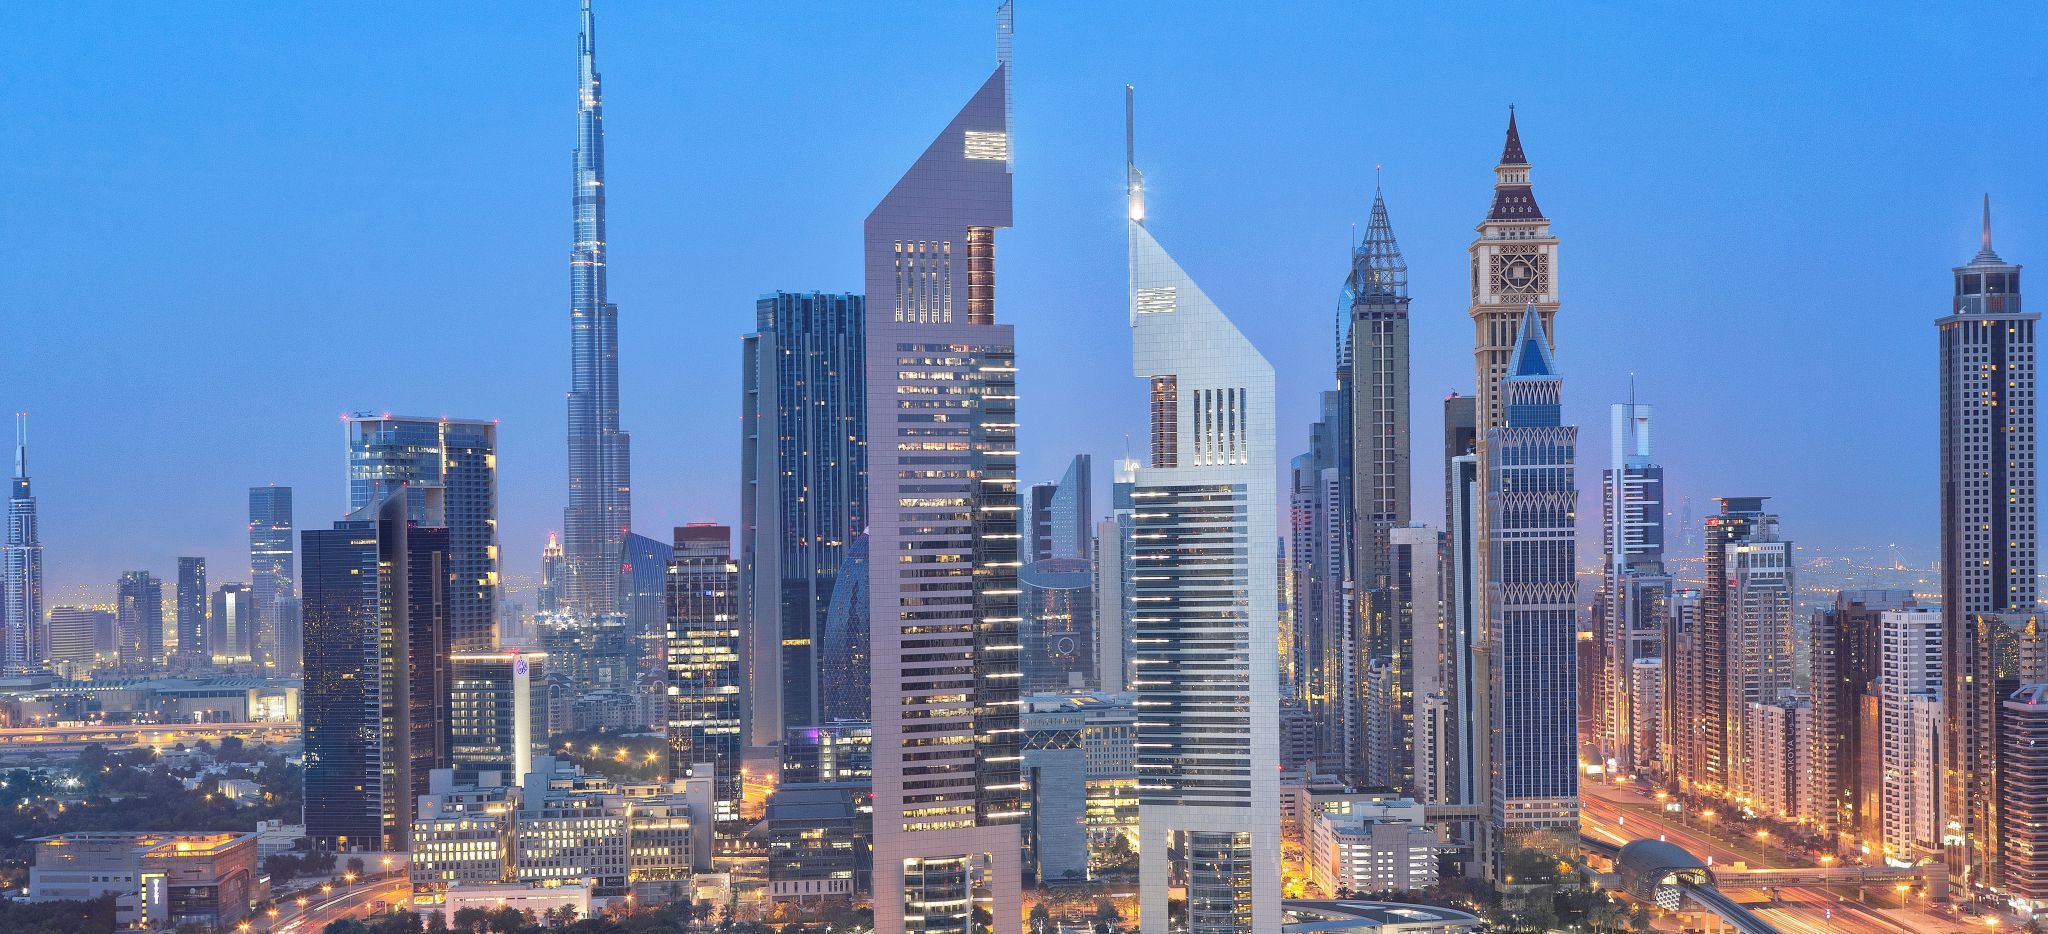 Skyline von Dubai, Burj Khalifah Emirates Towers